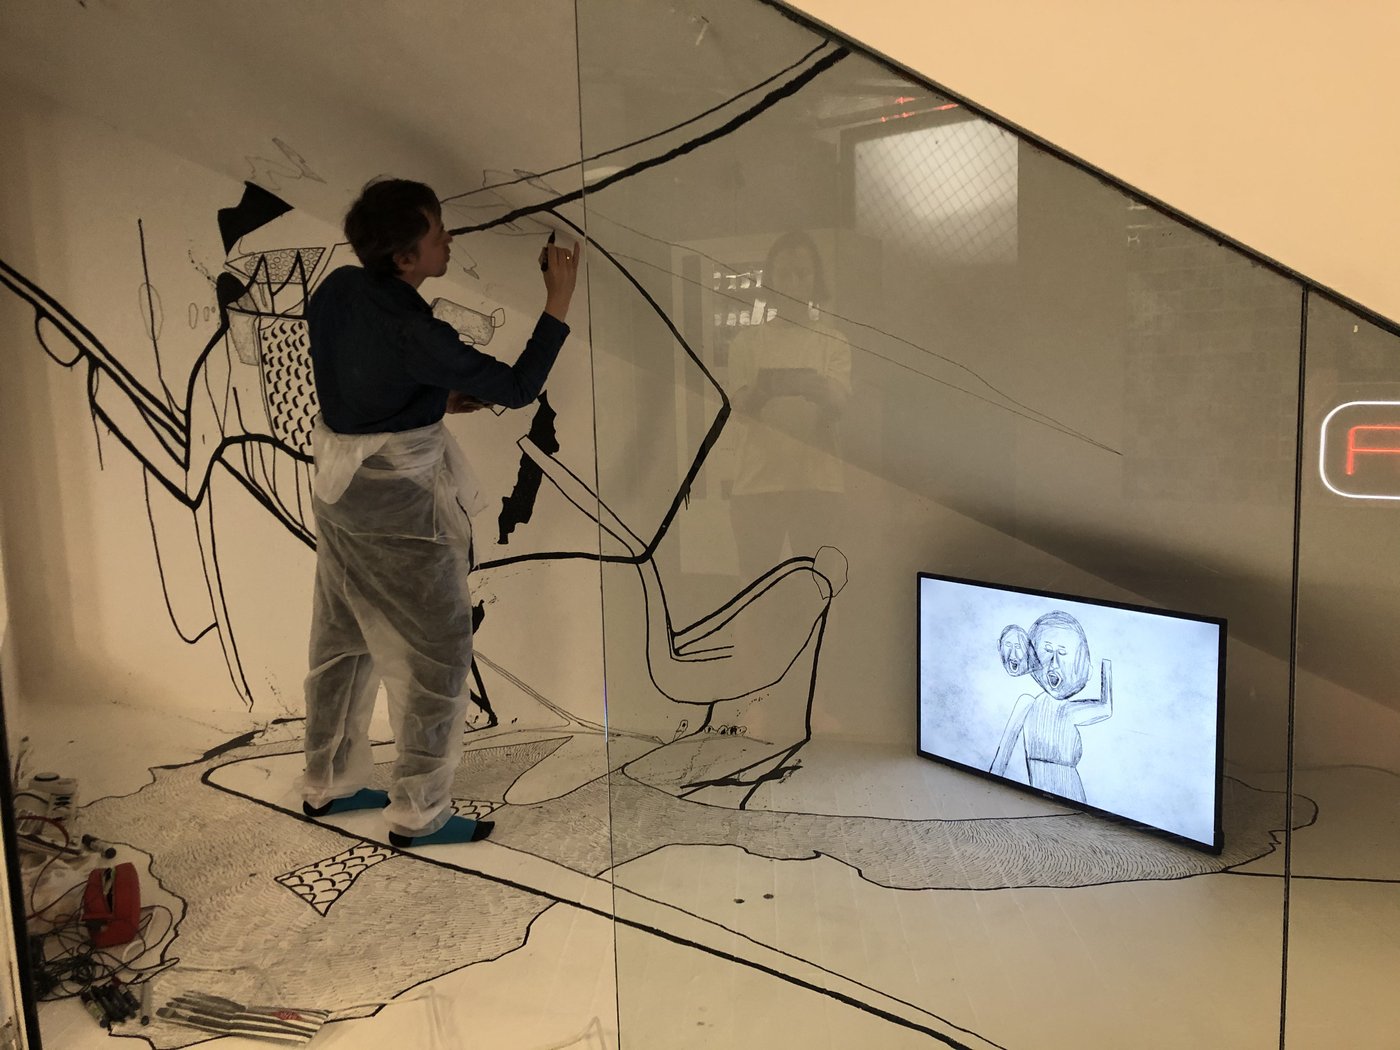 Installationsansicht mit Künstler der gerade dabei ist die Wand mit schwarzem Stift zu bemalen, in der rechten Ecke steht ein Bildschirm mit gezeichneter Figur